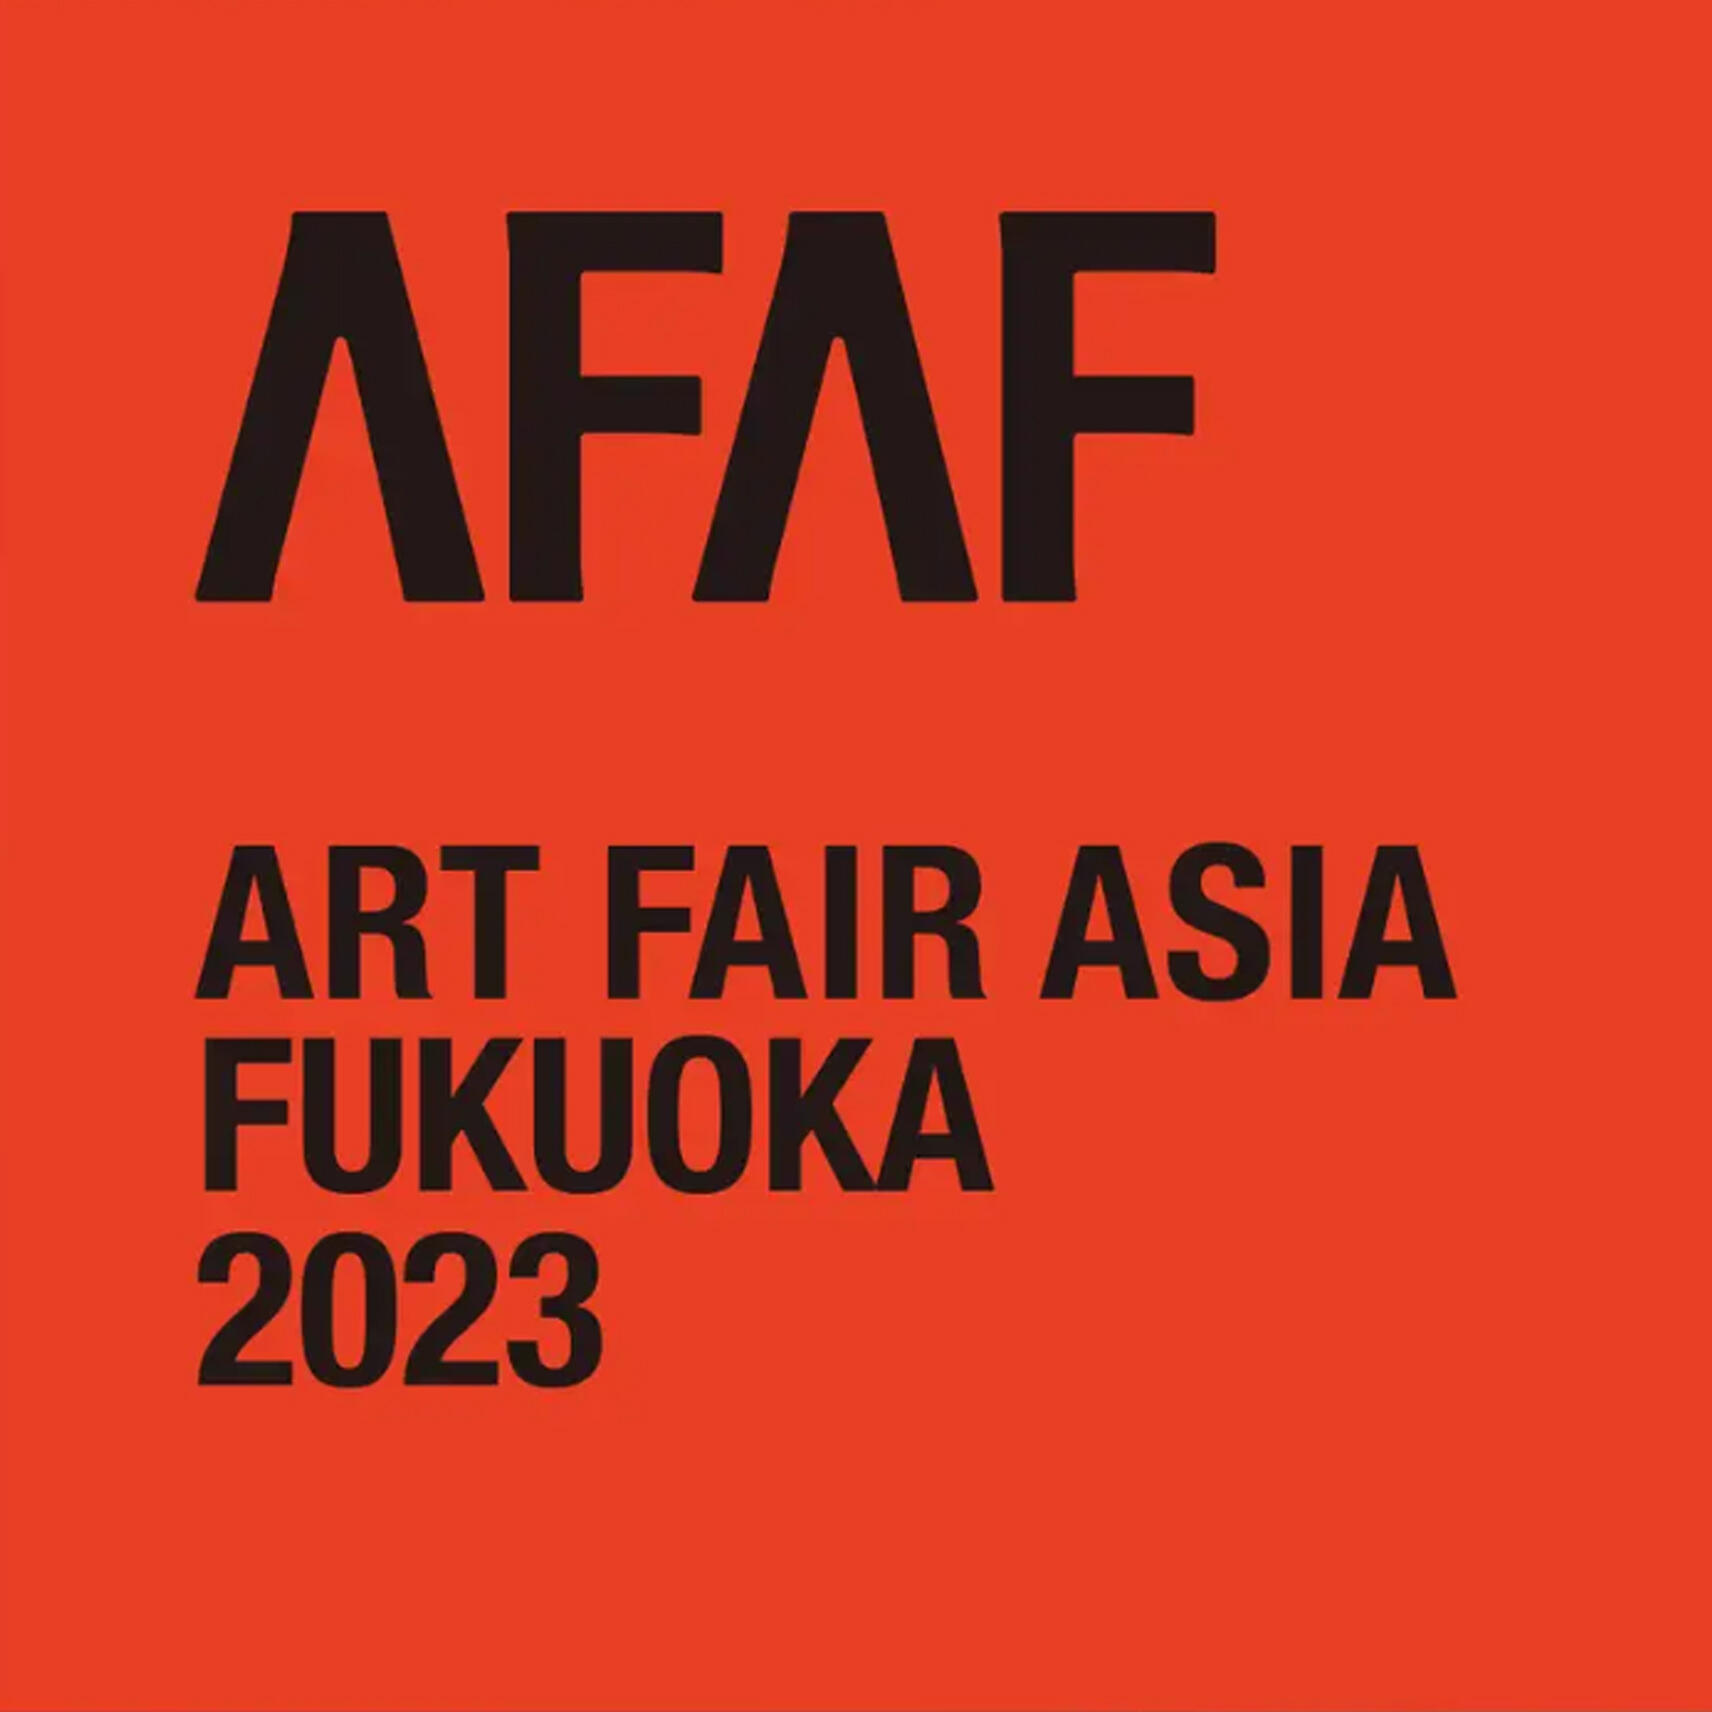 [ART FAIR] Art Fair Asia Fukuoka 2023, Japan